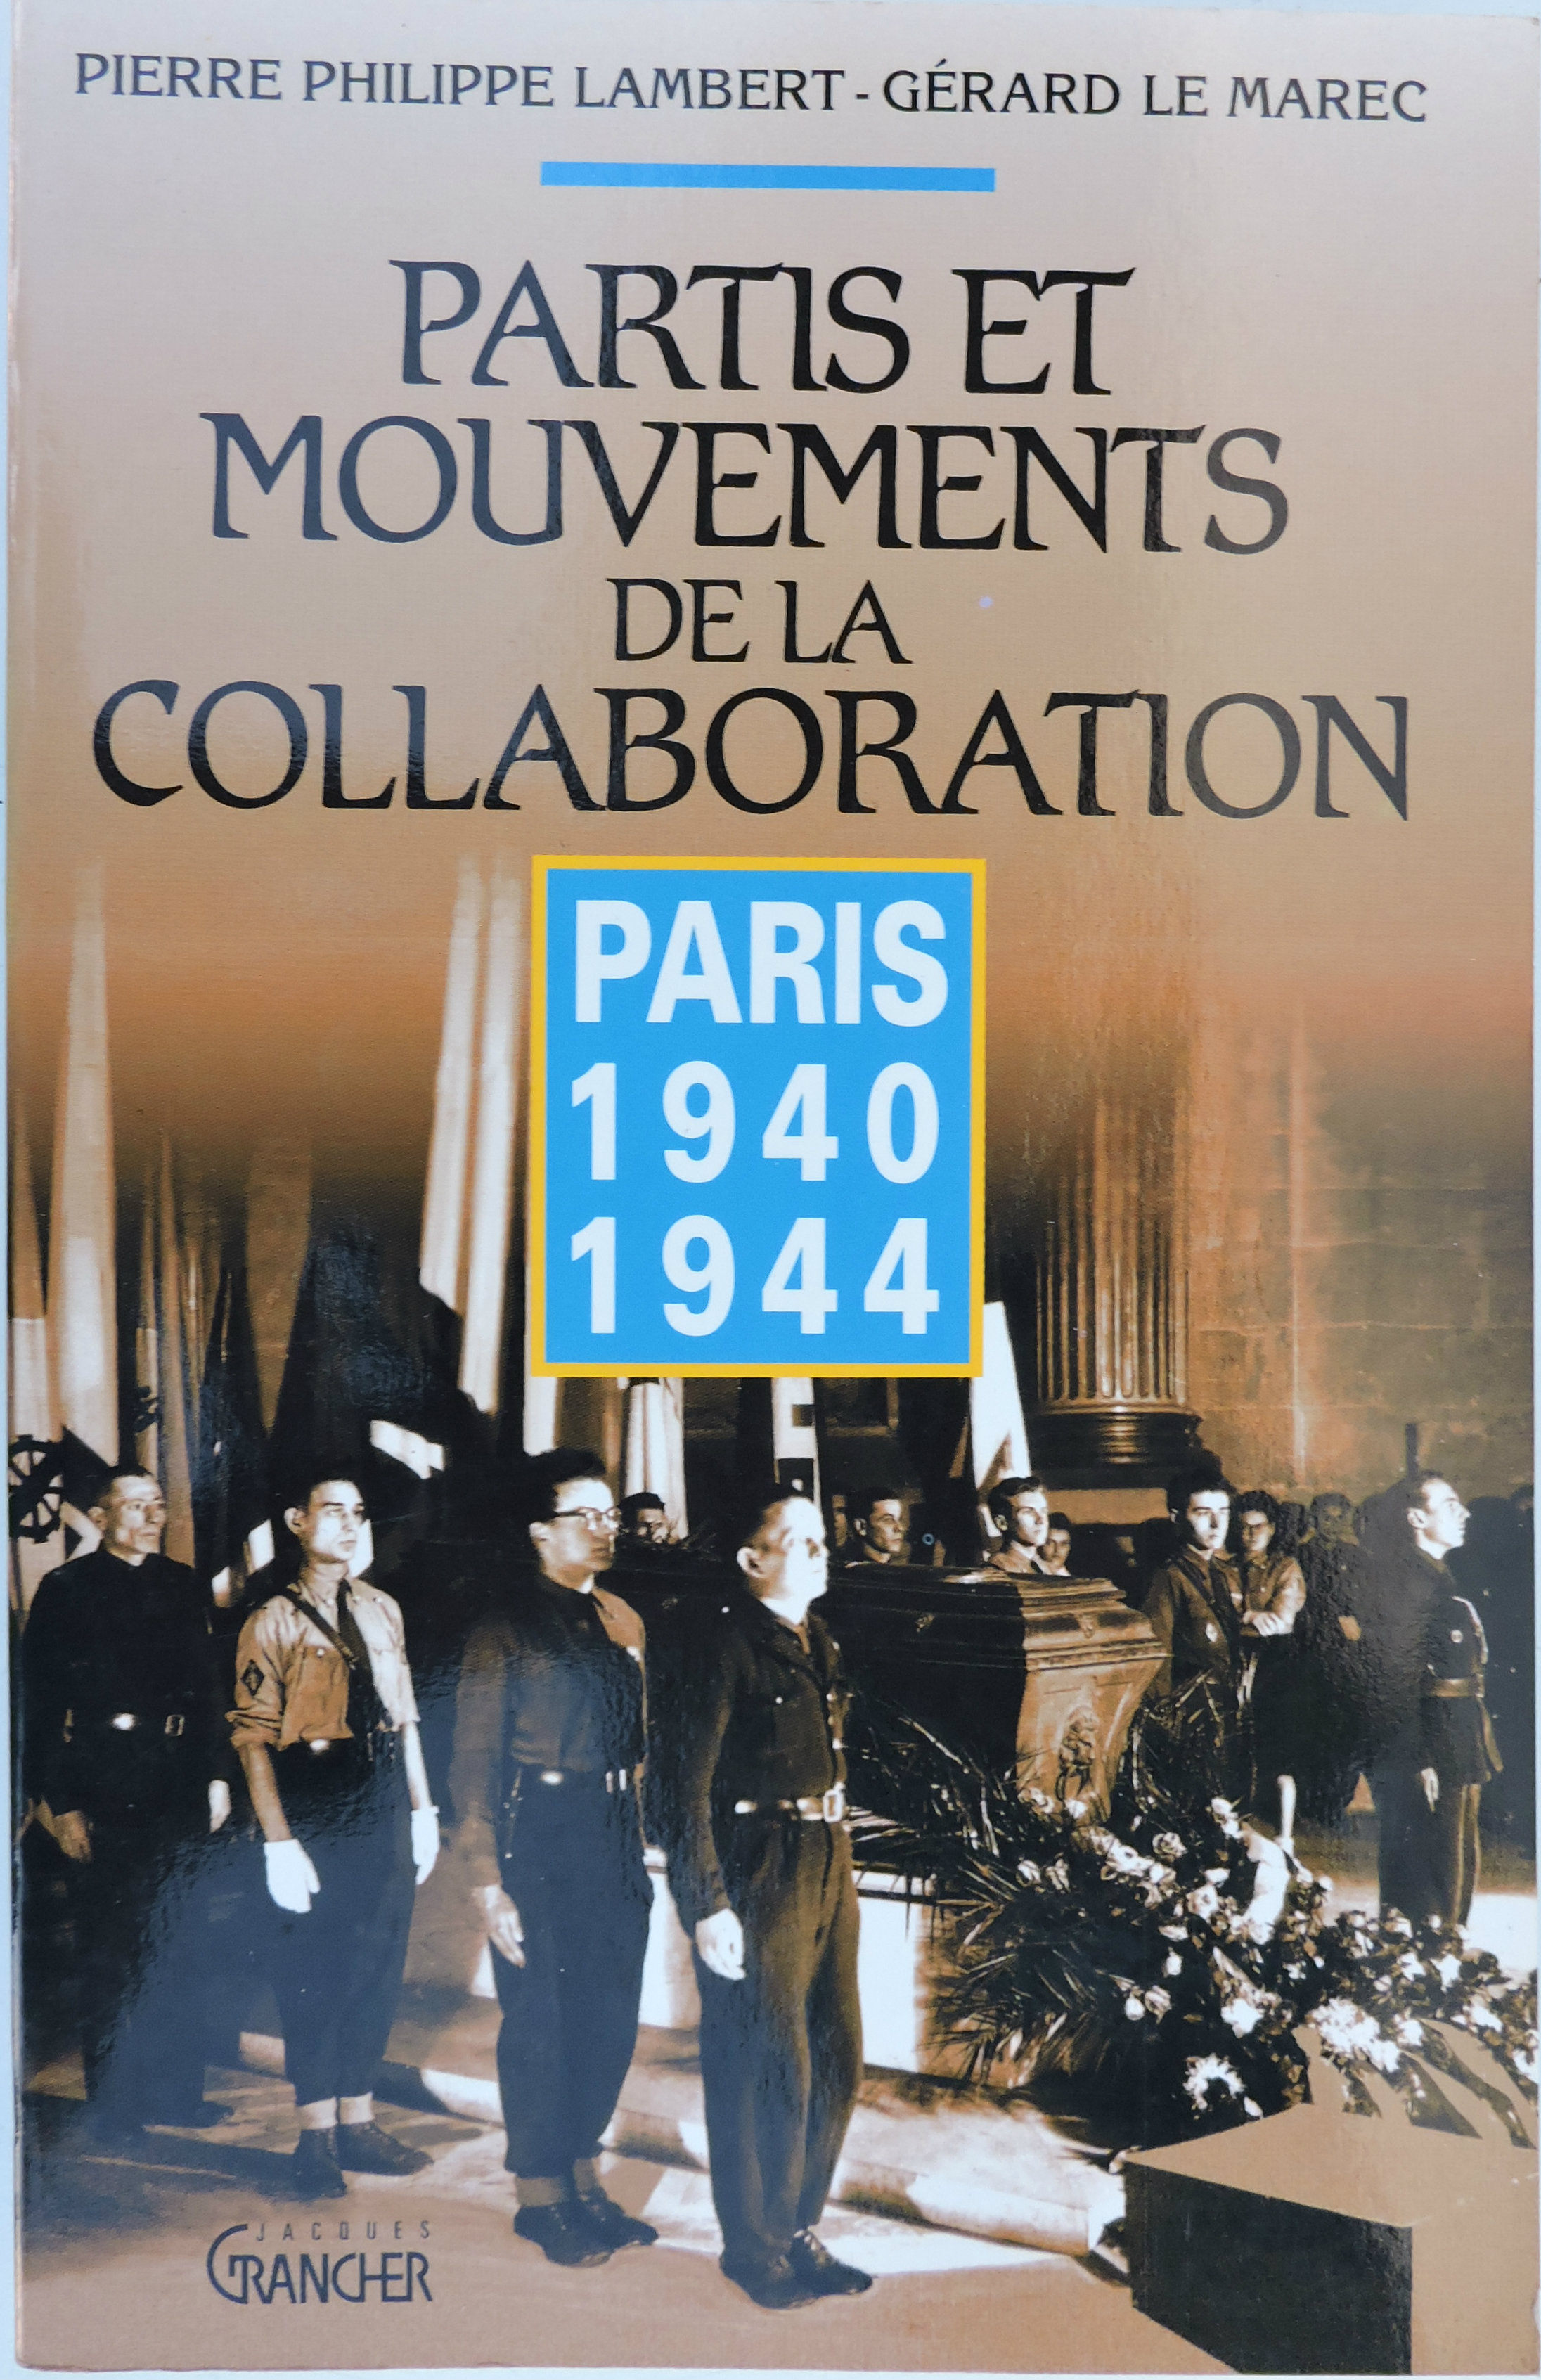 Partis et mouvements de la Collaboration Paris 1940-1944  Lambert &amp; Le Marec